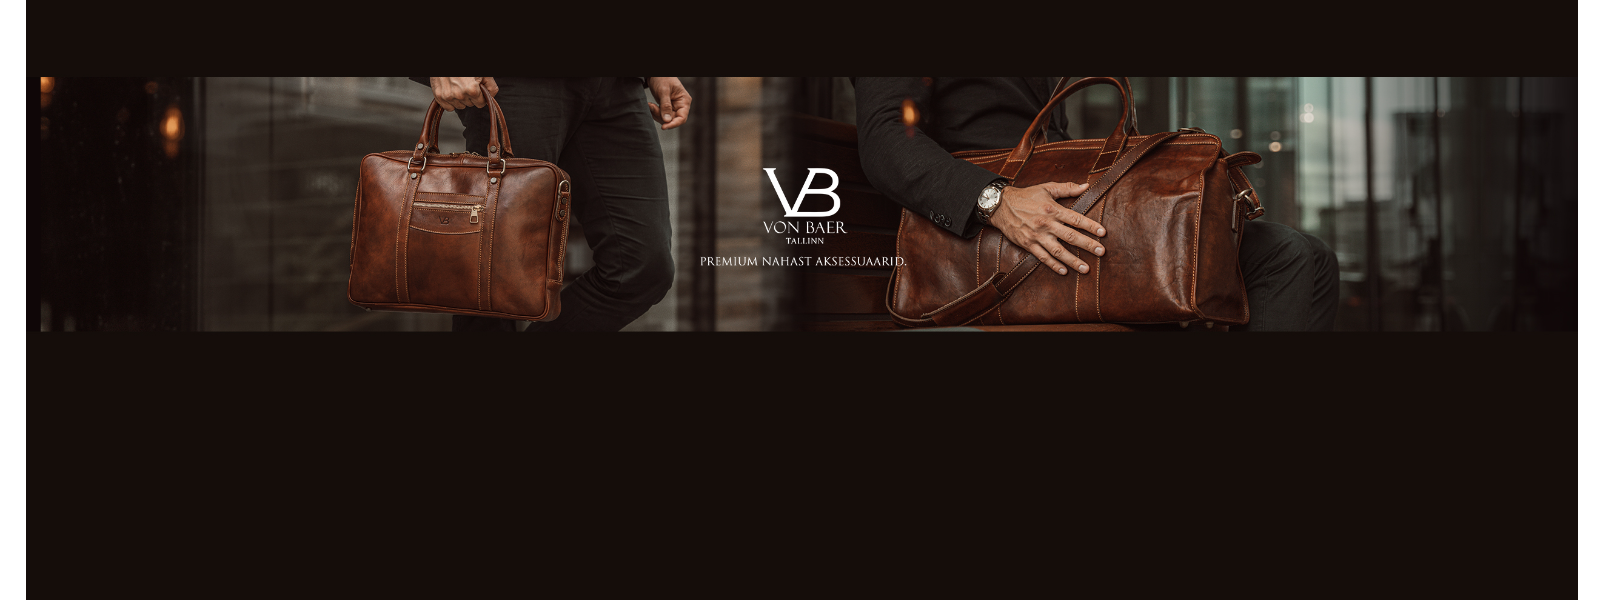 VON BAER OÜ - Premium nahast aksessuaarid, nahktooted, kotid, käekotid ning naiste ja meeste rahakotid. Eesti bränd.